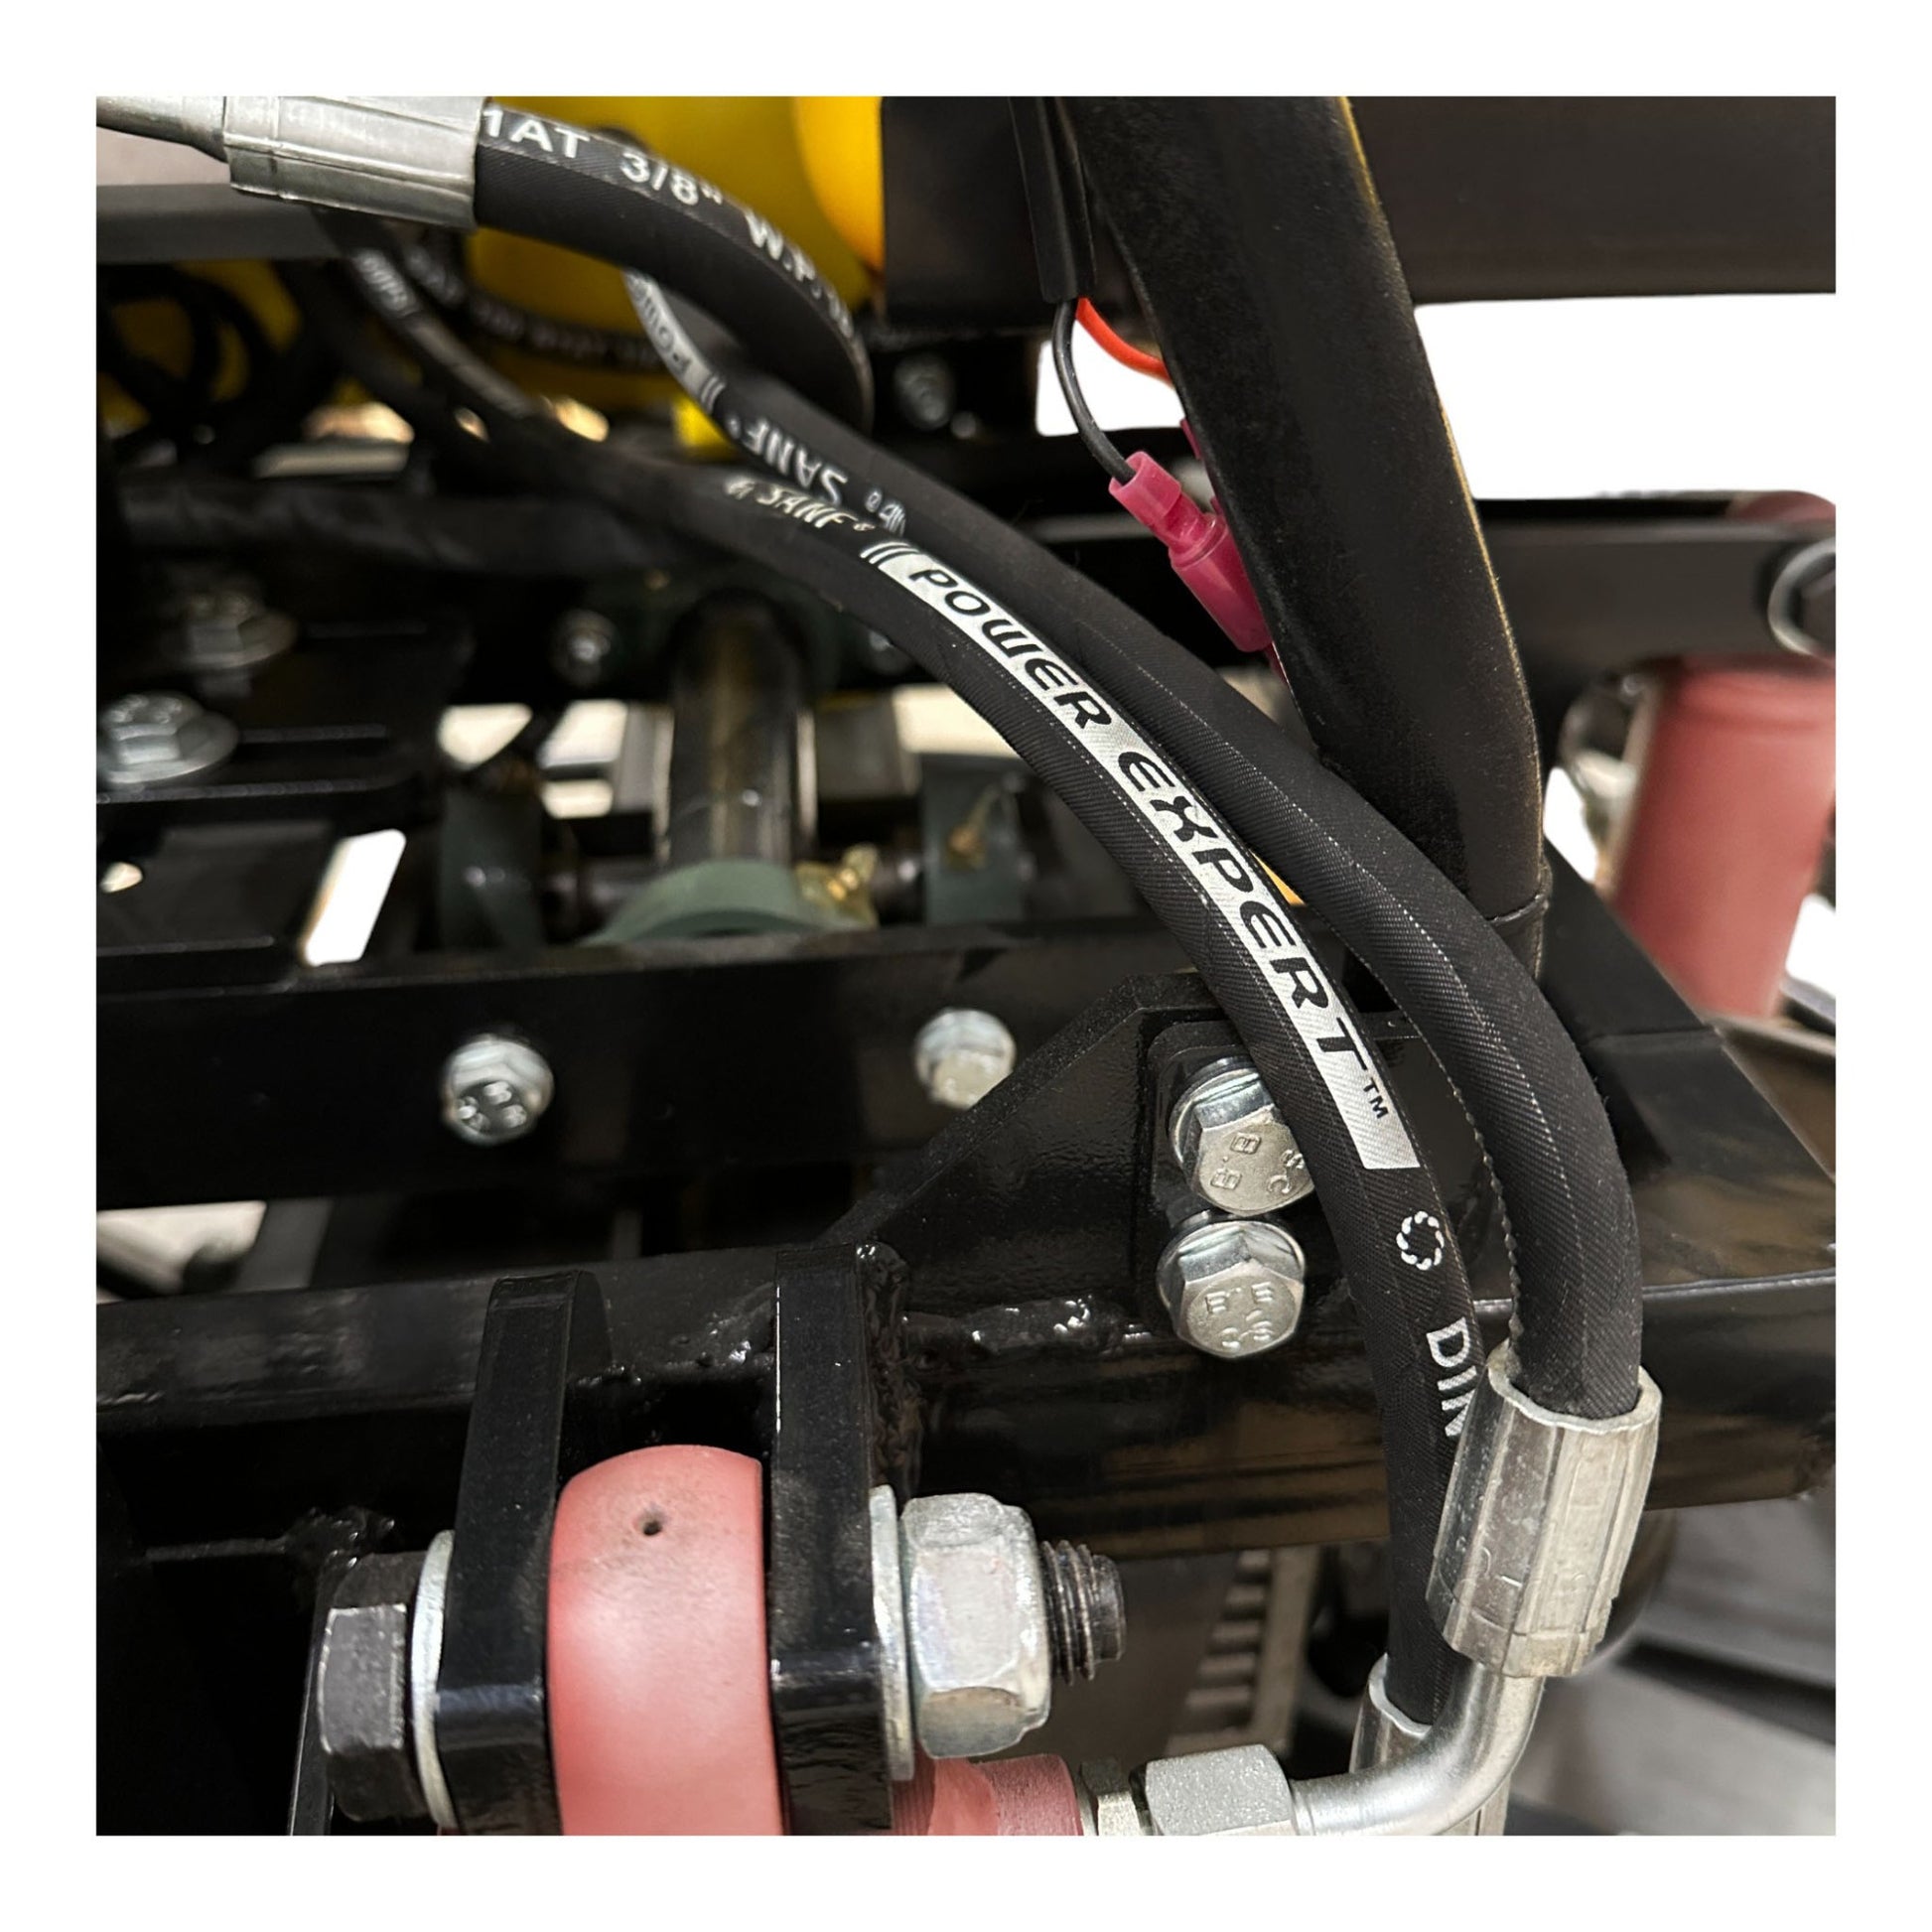 QUMH78 Honda GX690 Tour hydraulique de 36 pouces sur truelle mécanique